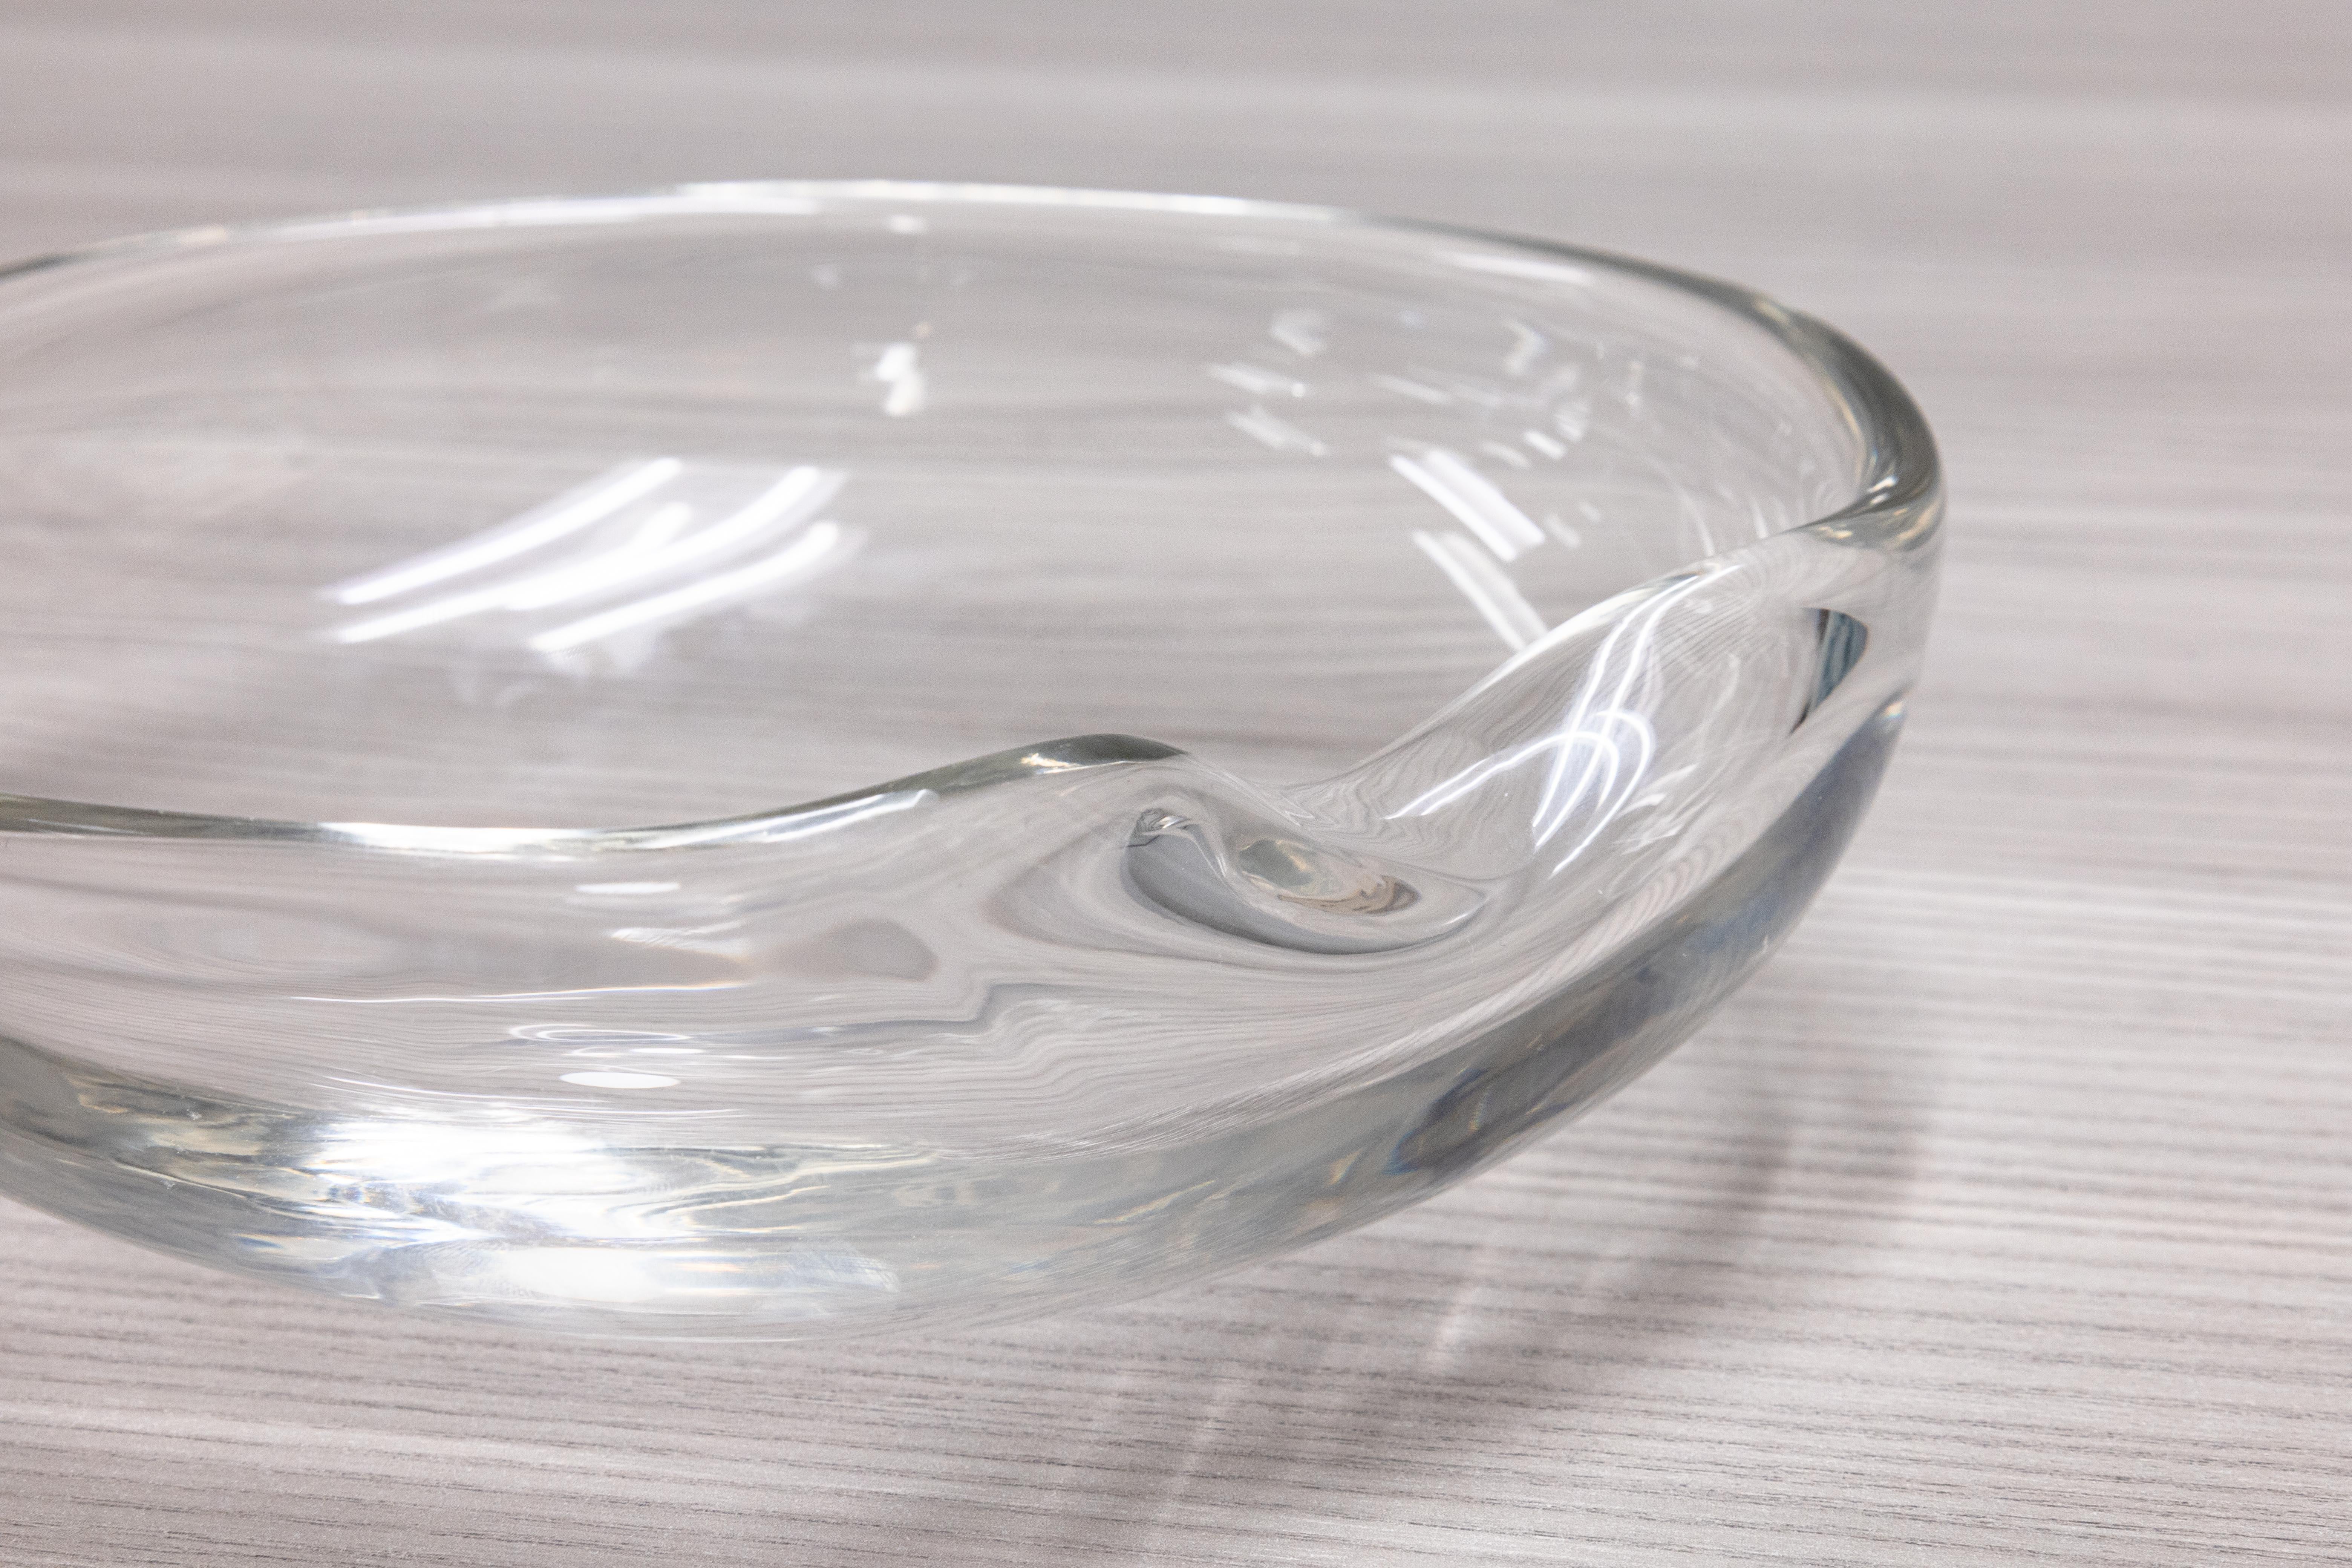 Un magnifique bol en verre soufflé à la main conçu par Elsa Peretti pour Tiffany & Co. Cette pièce, connue sous le nom de 